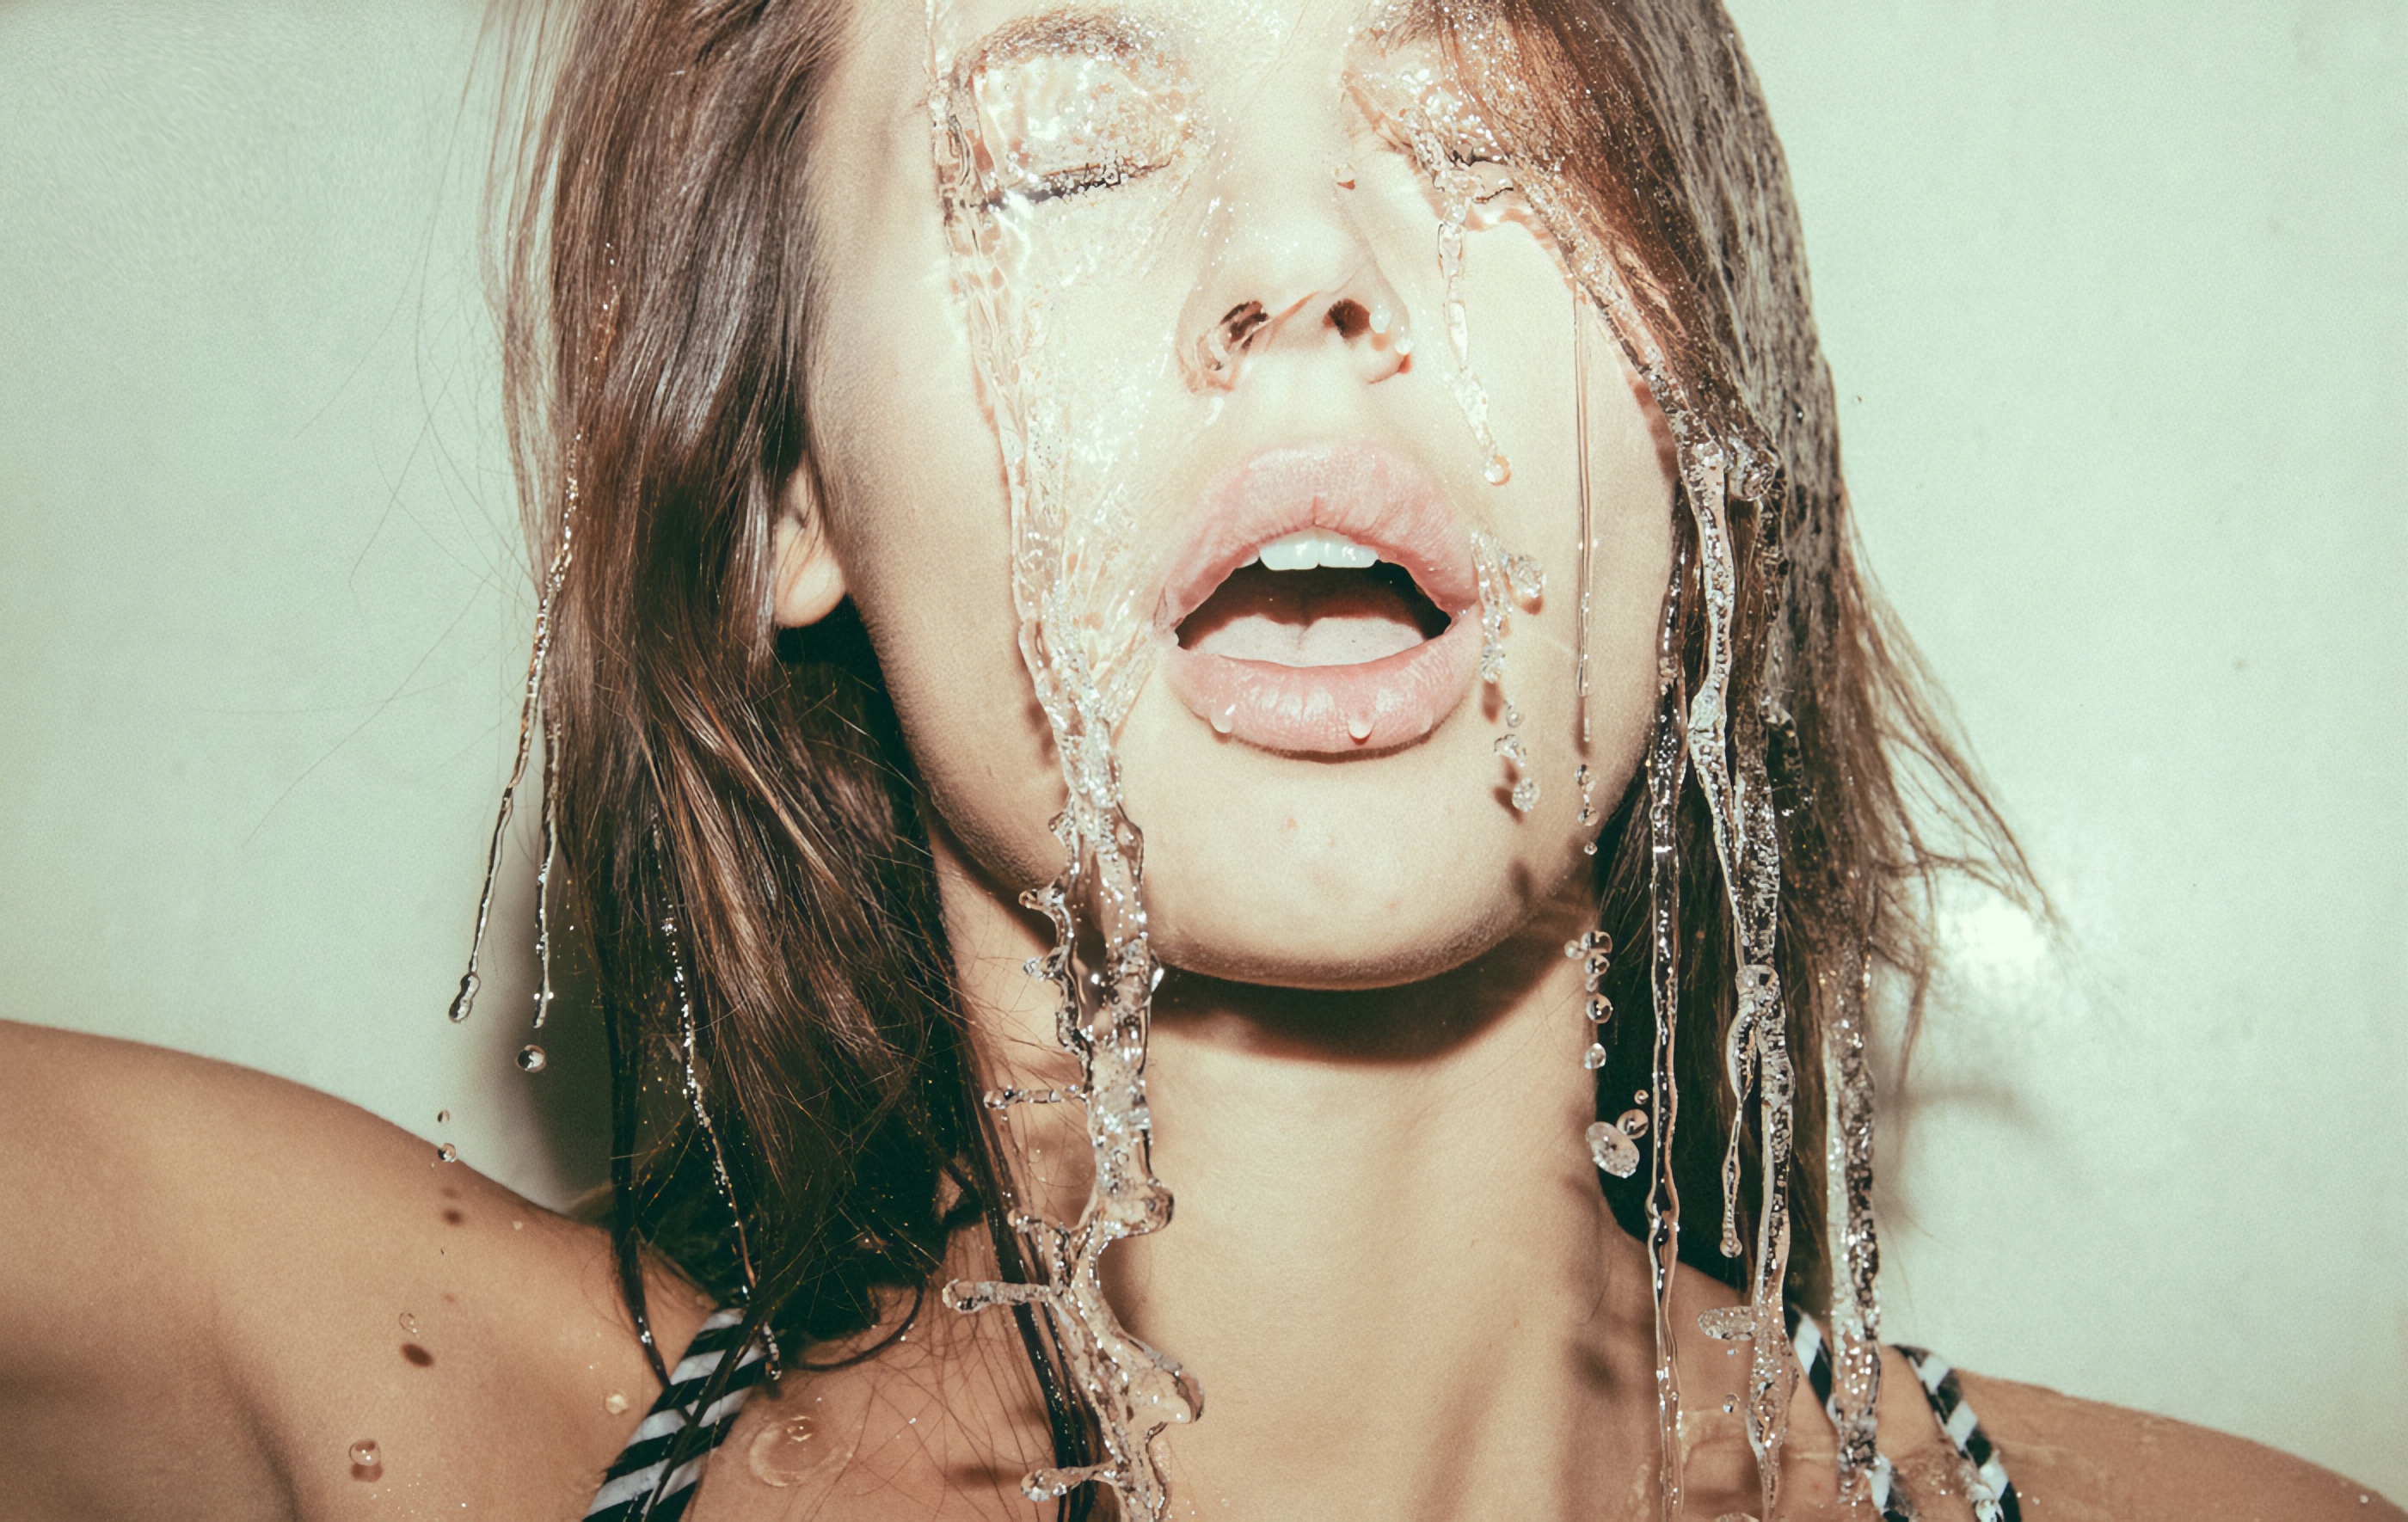 People 2800x1770 Miron Chomacki face portrait model brunette water women